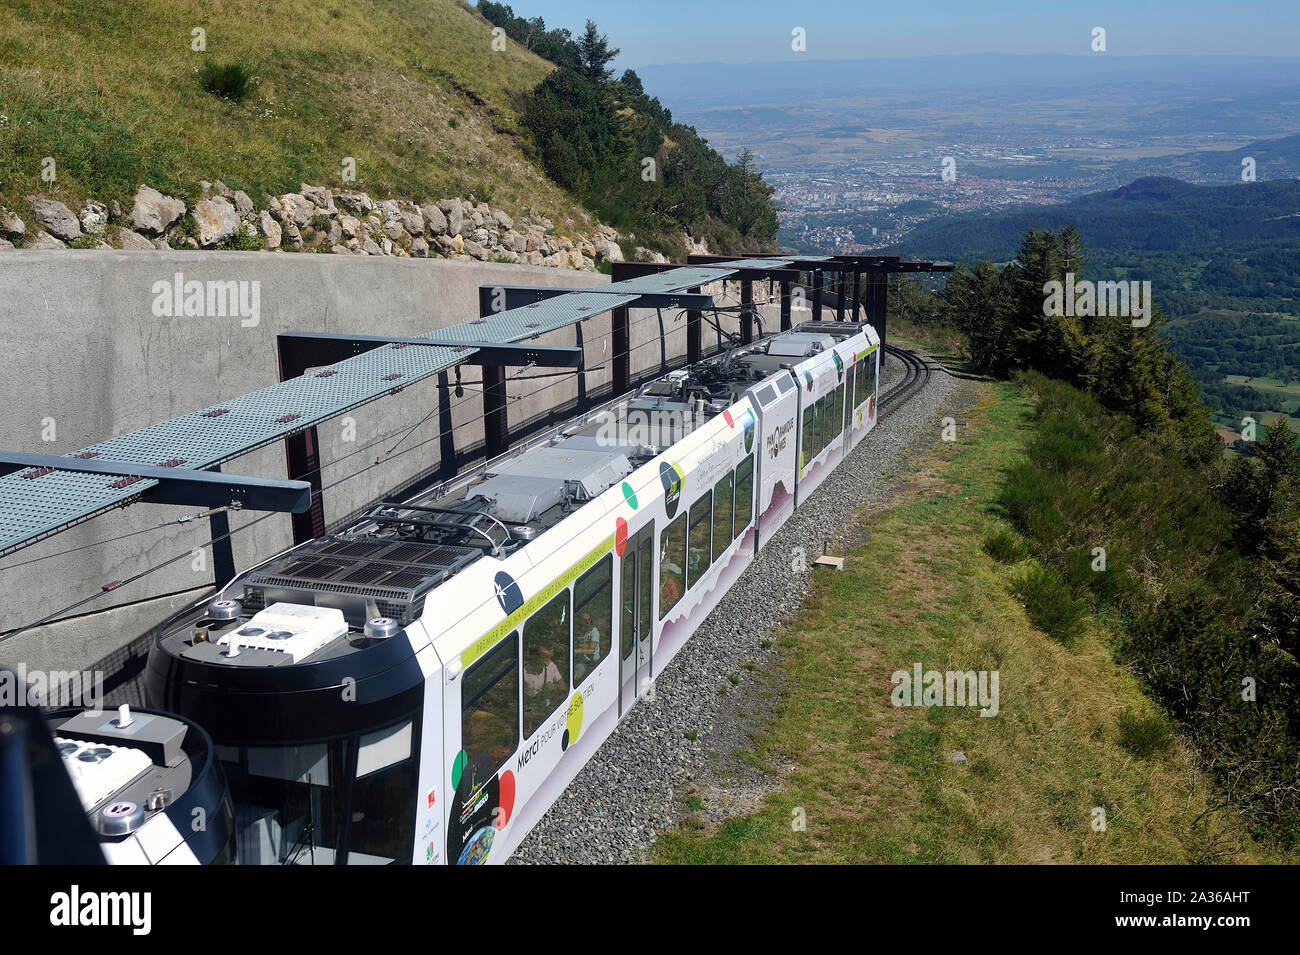 Il treno a ruote dentate per salire sulla vetta del Puy de Dome vulcano nel dipartimento francese dello stesso nome Foto Stock